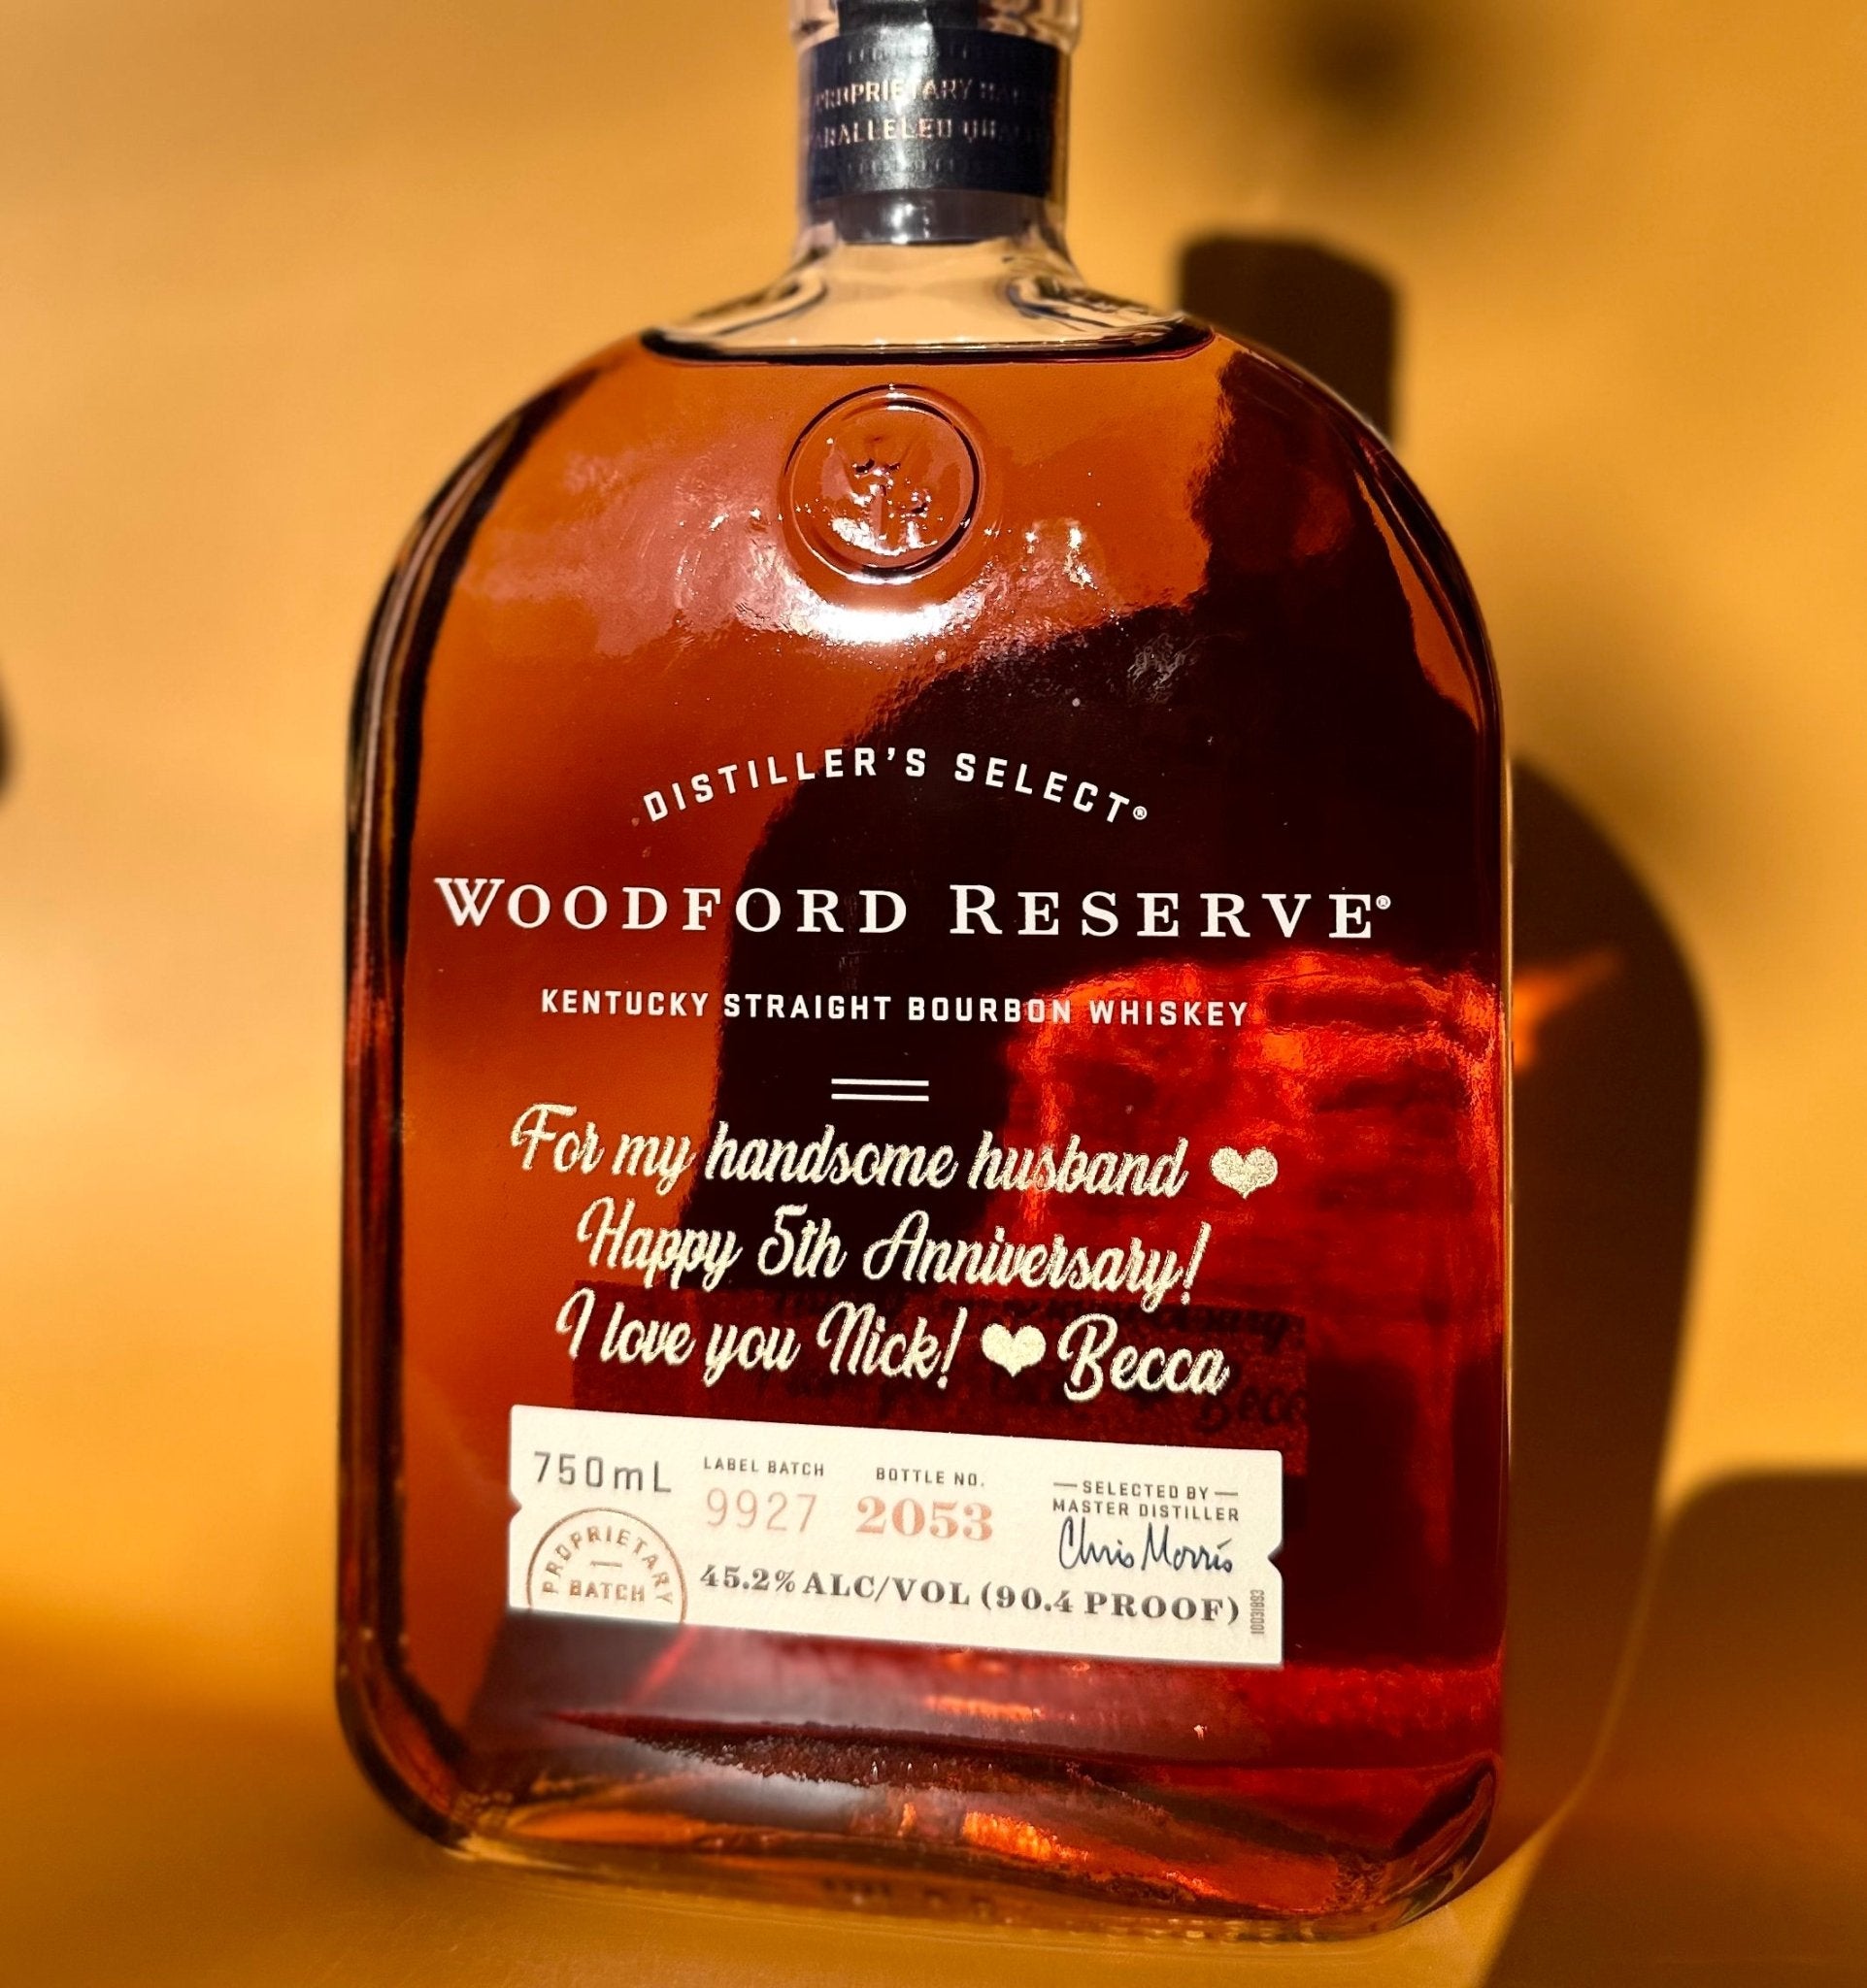 Woodford Reserve Kentucky Straight Bourbon Whiskey - Bottle Engraving